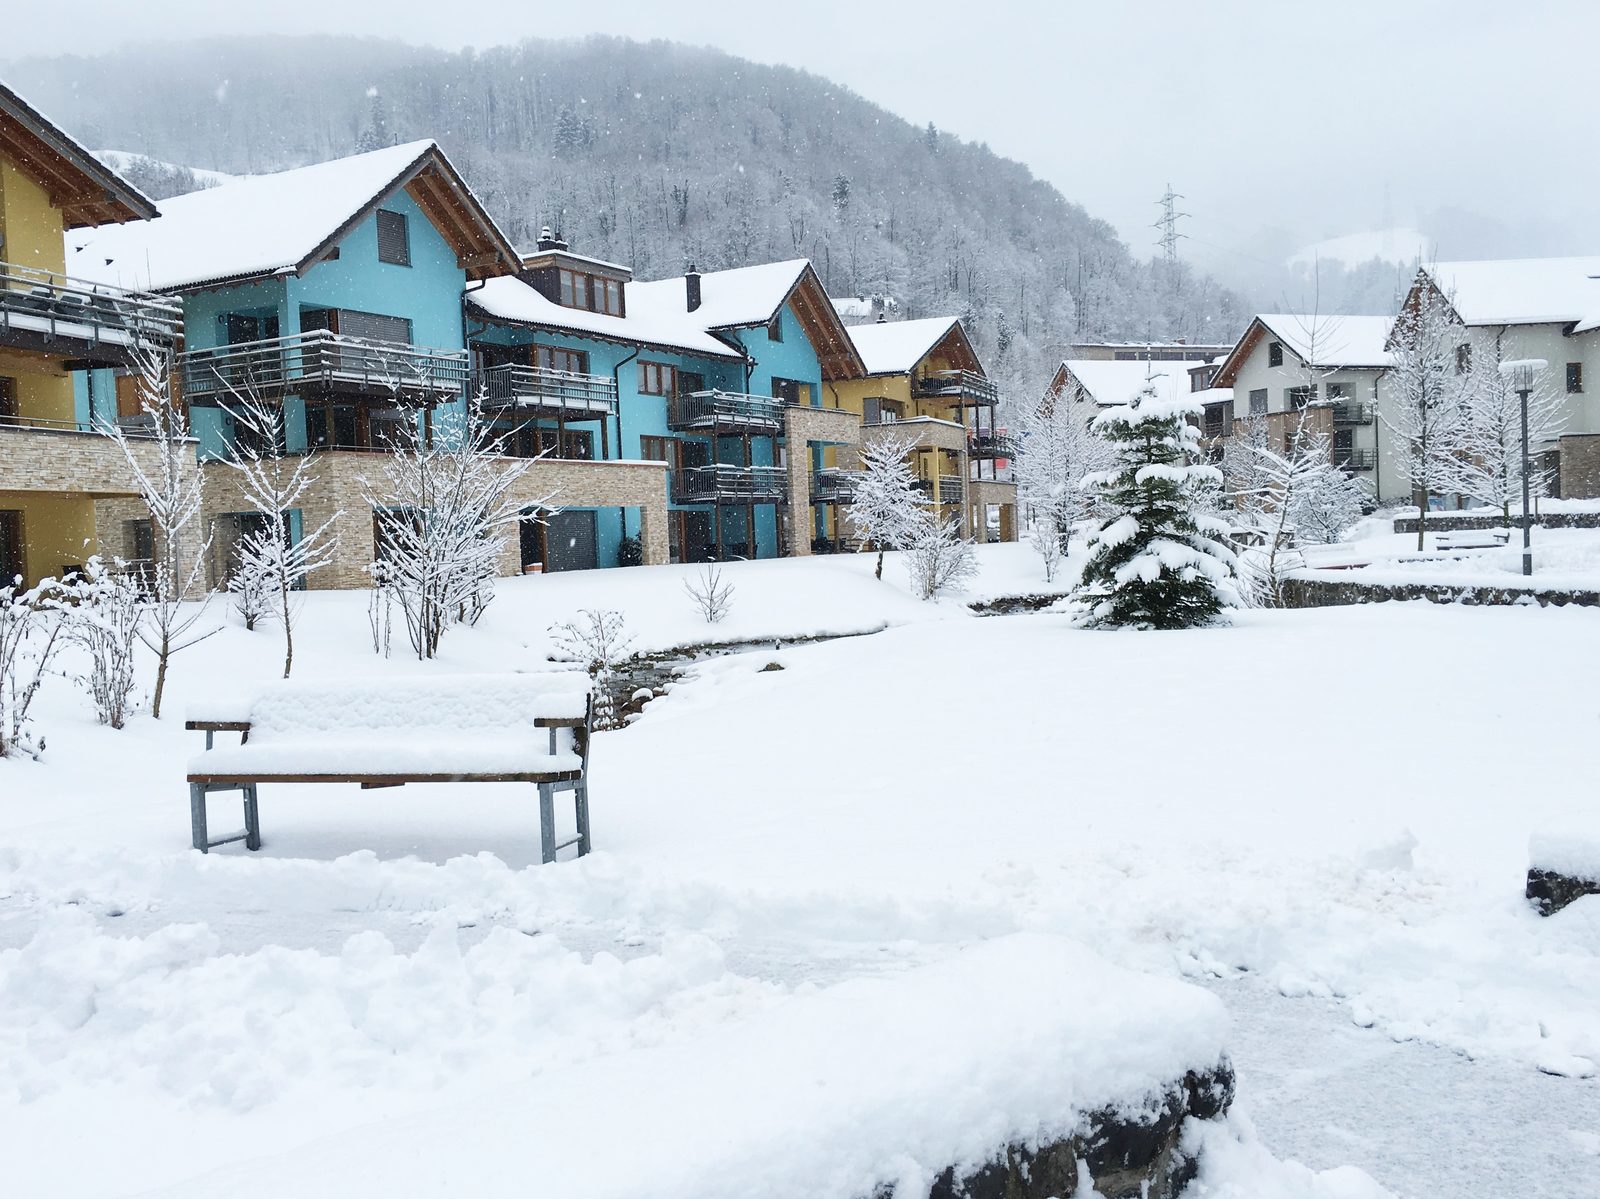 Der Dorfplatz von Resort Walensee in der Region Heidiland, Schweiz, während eines Wintersporturlaubs auf dem Flumsberg